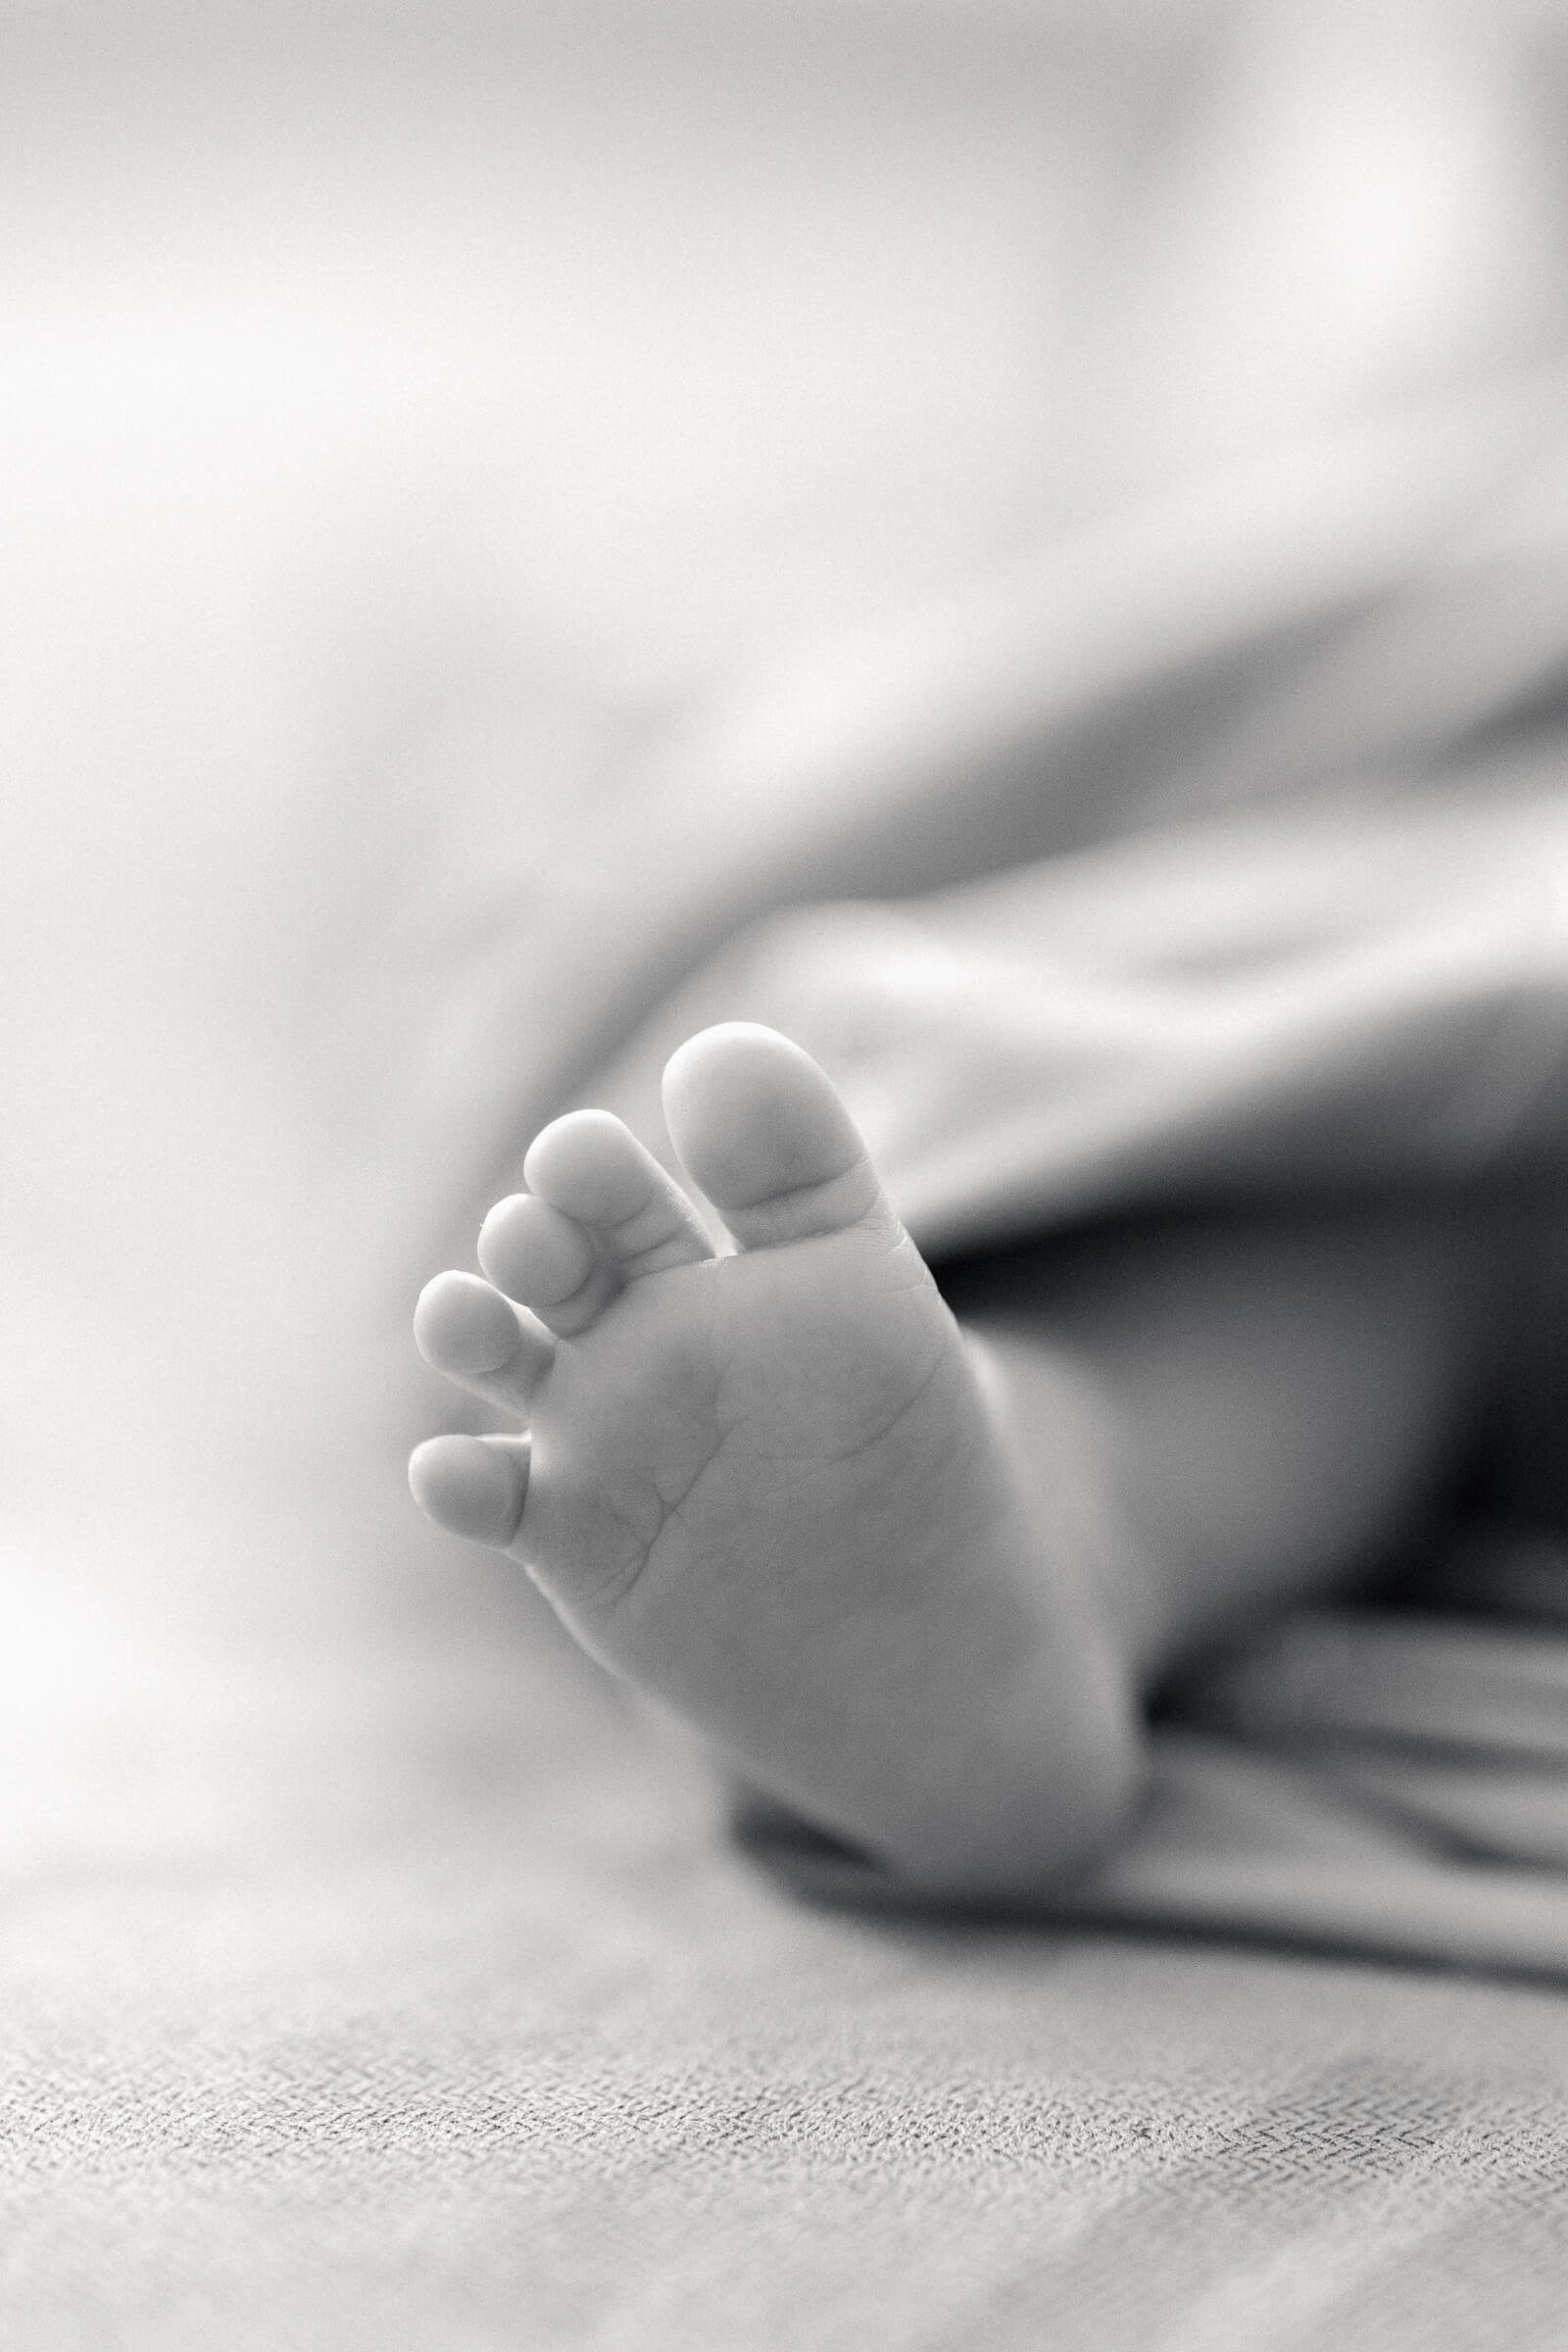 Black and white photo of newborn foot